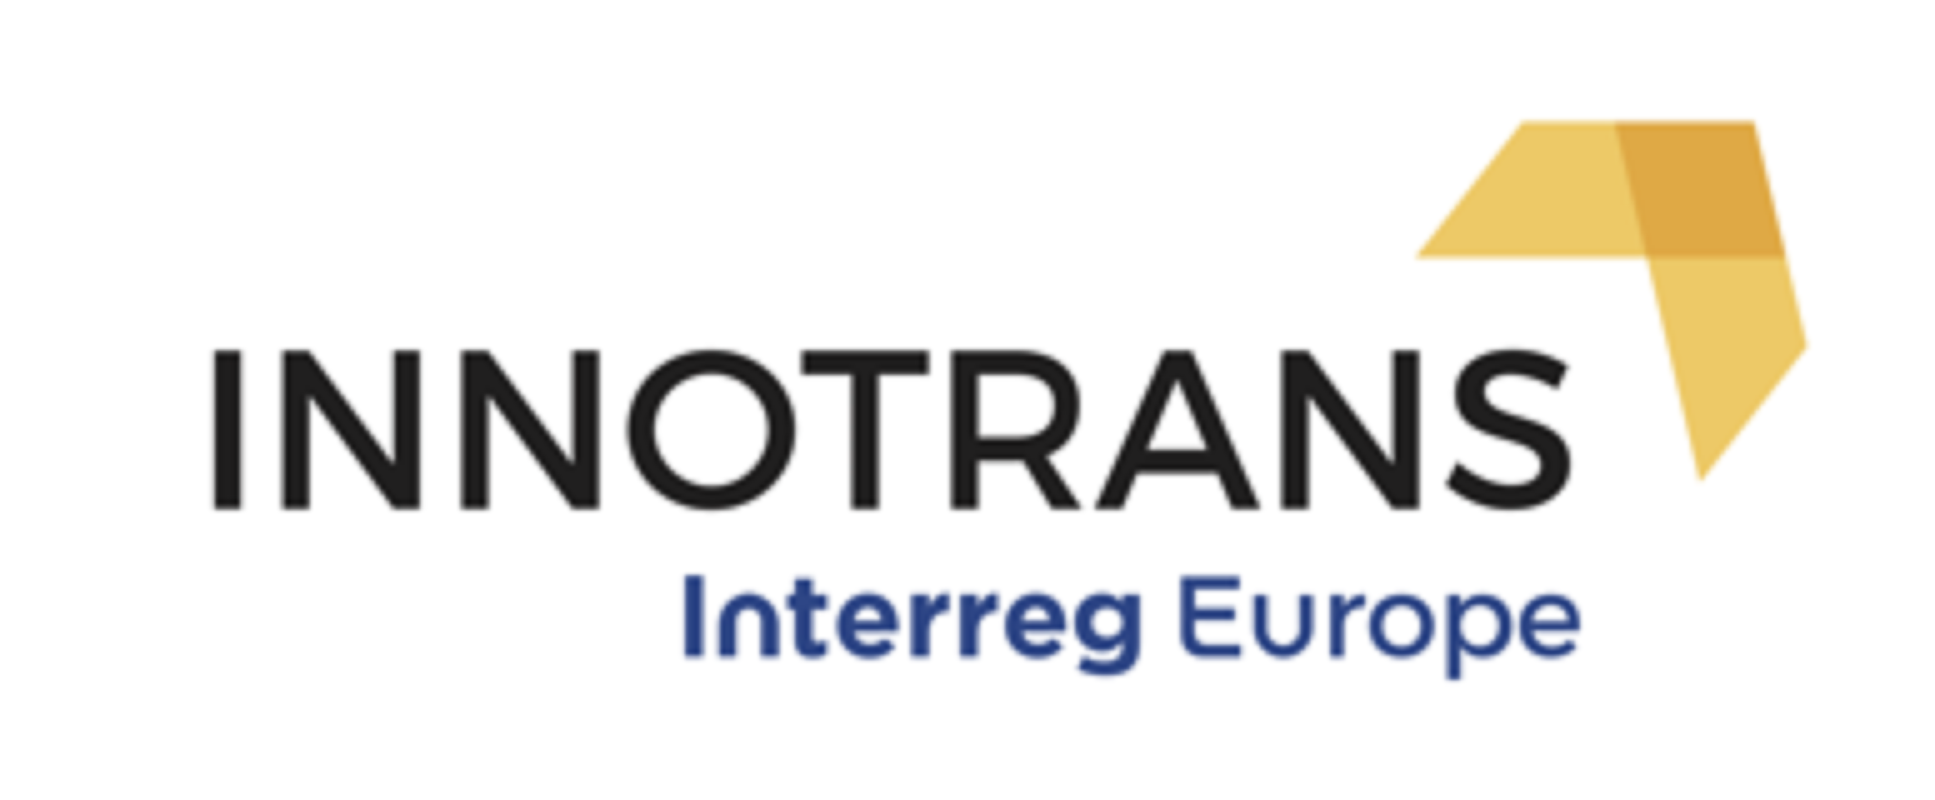 INNOTRANS - Enhancing transport innovation capacity of regions